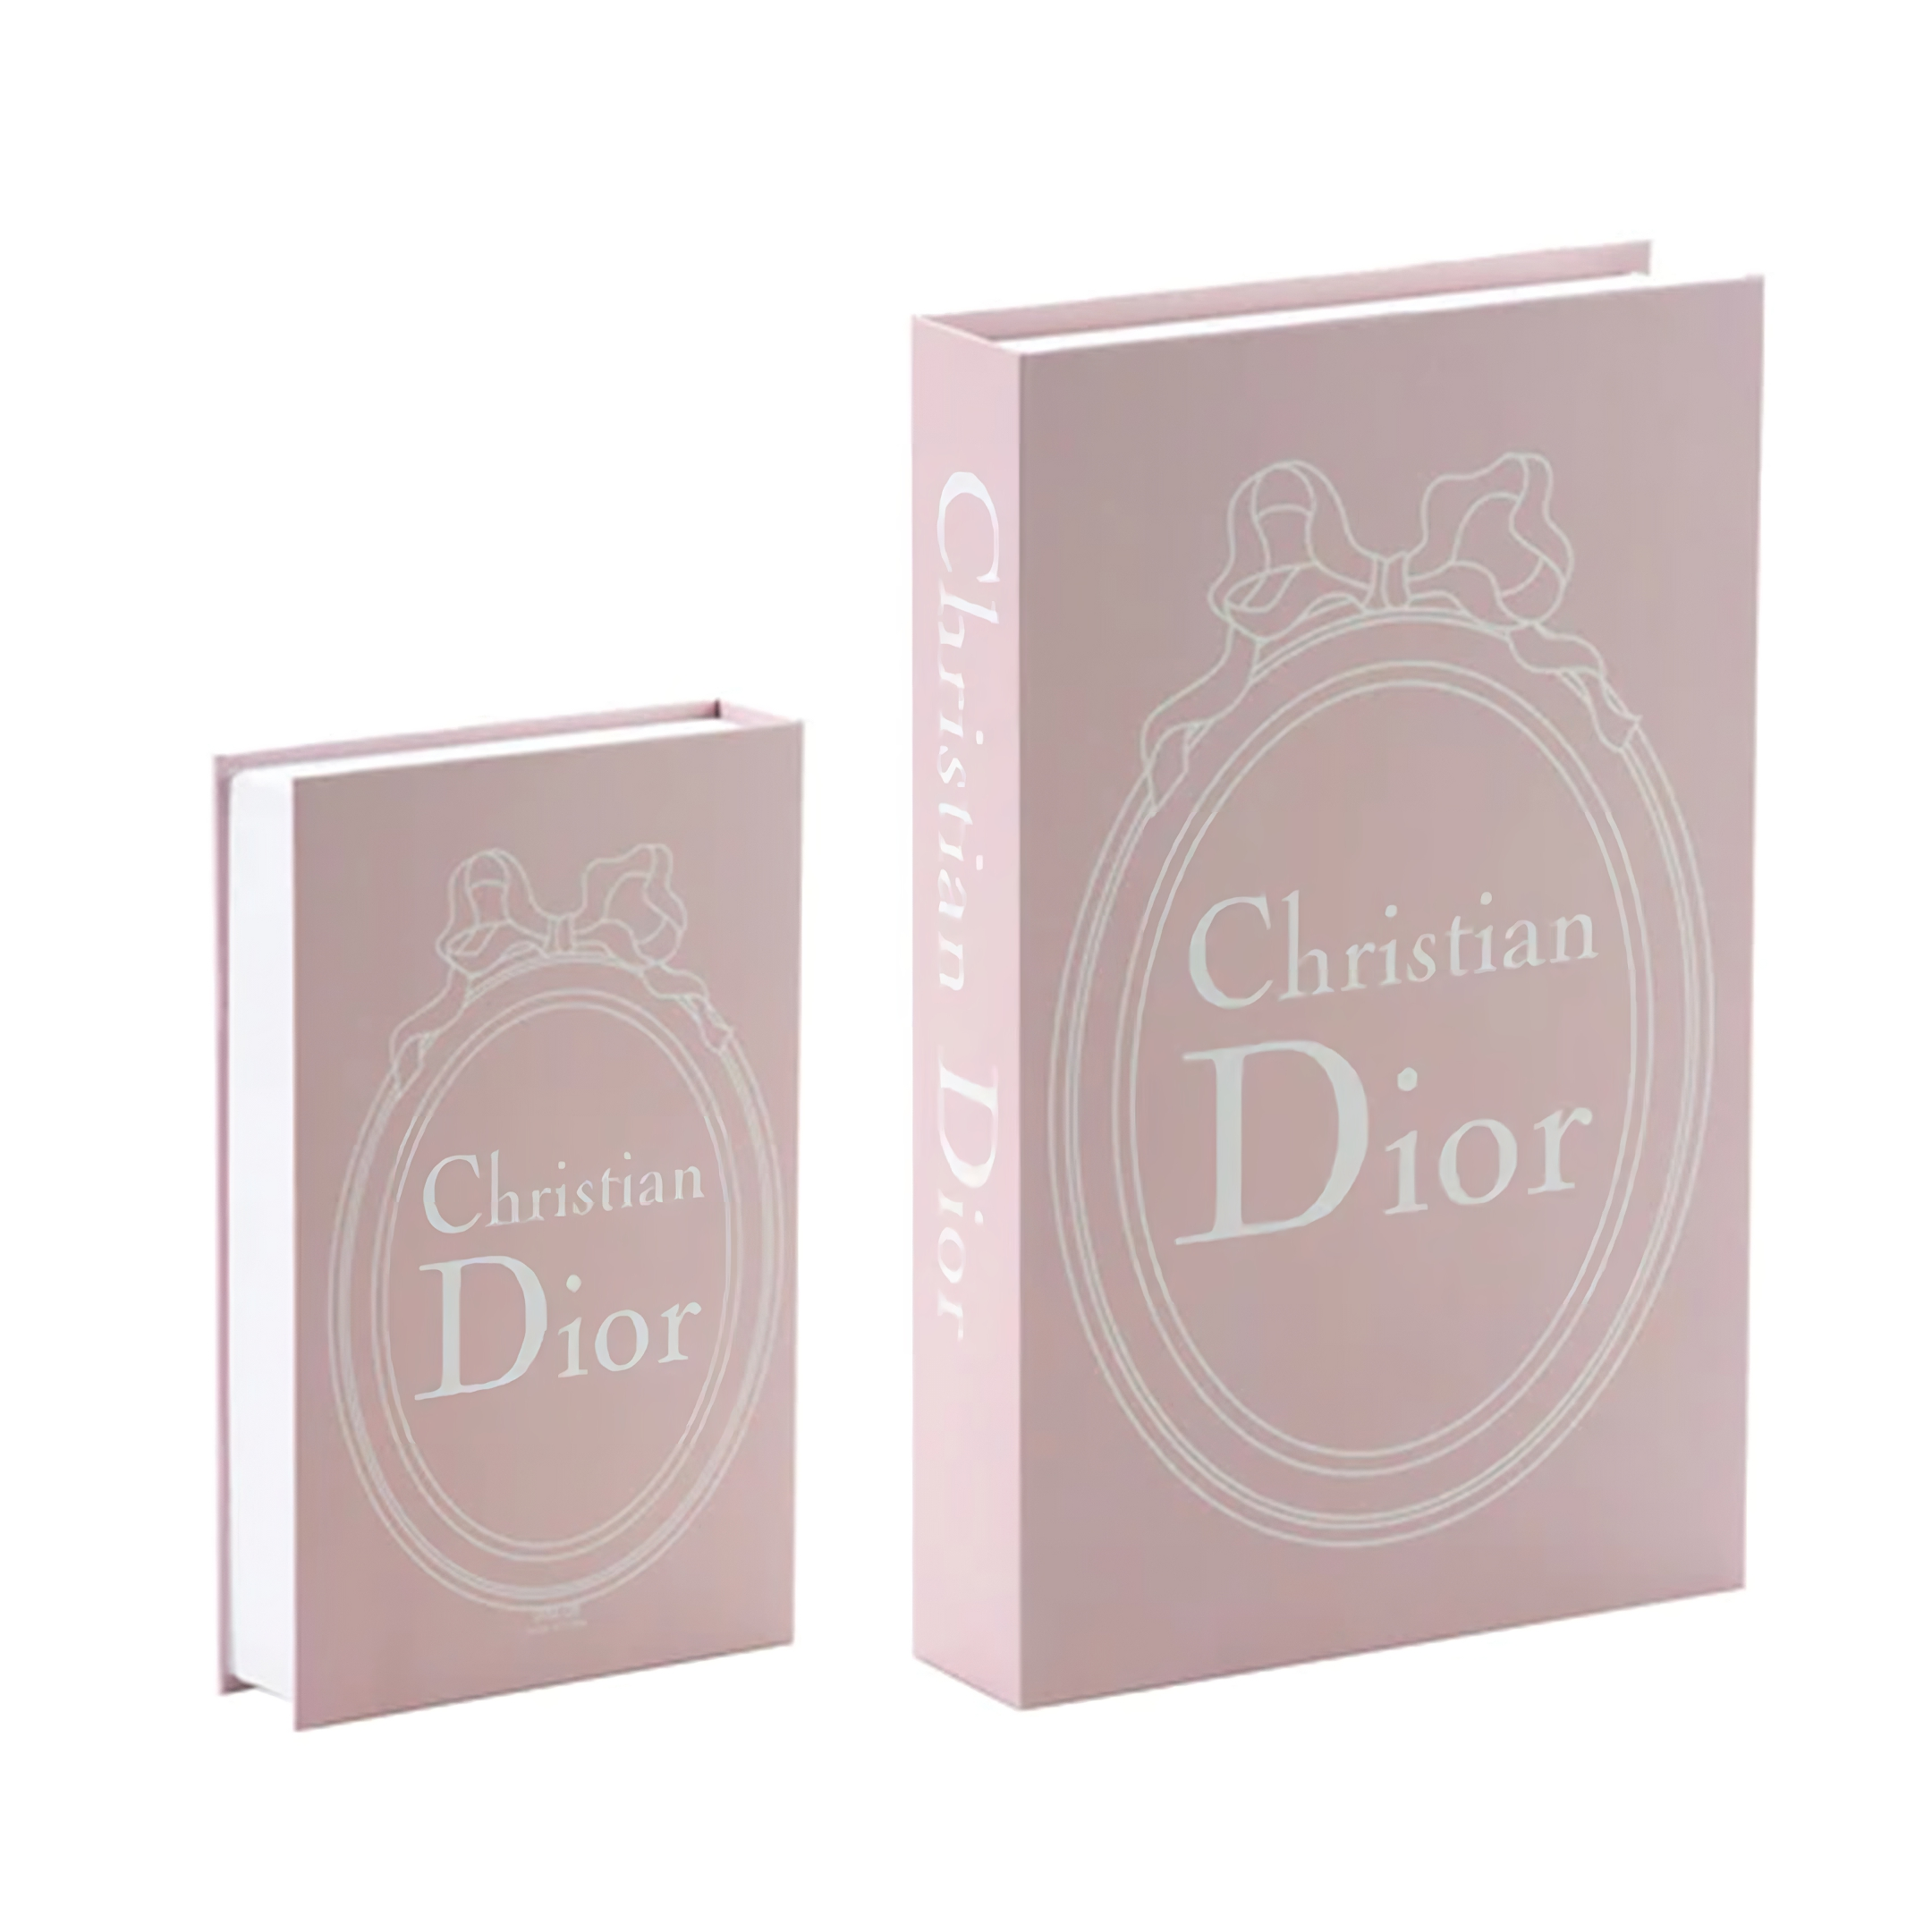 decorative fashion books chanel dior